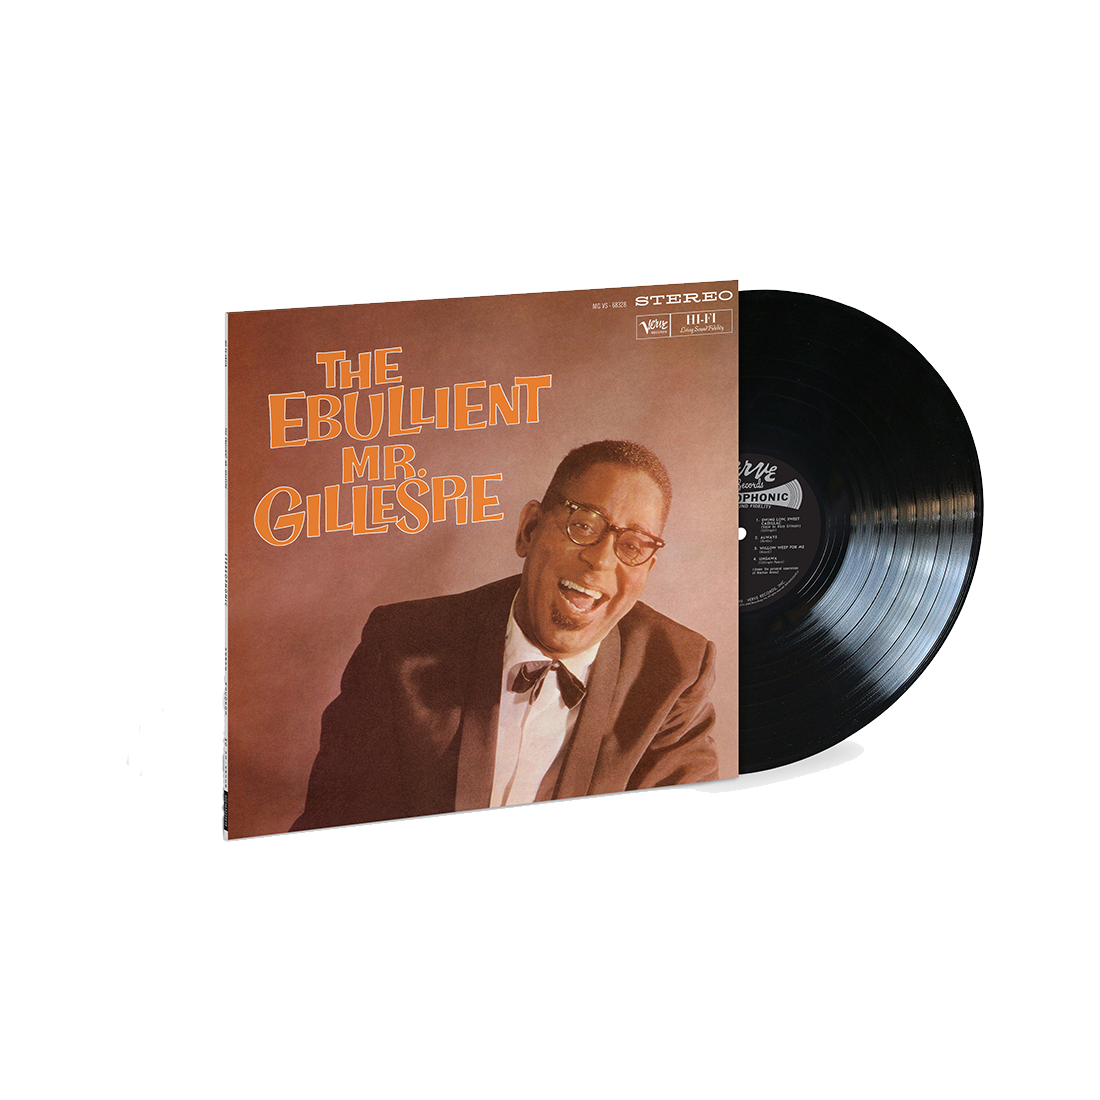 Dizzy Gillespie - The Ebullient Mr. Gillespie (Verve, 1959): Vinyl LP